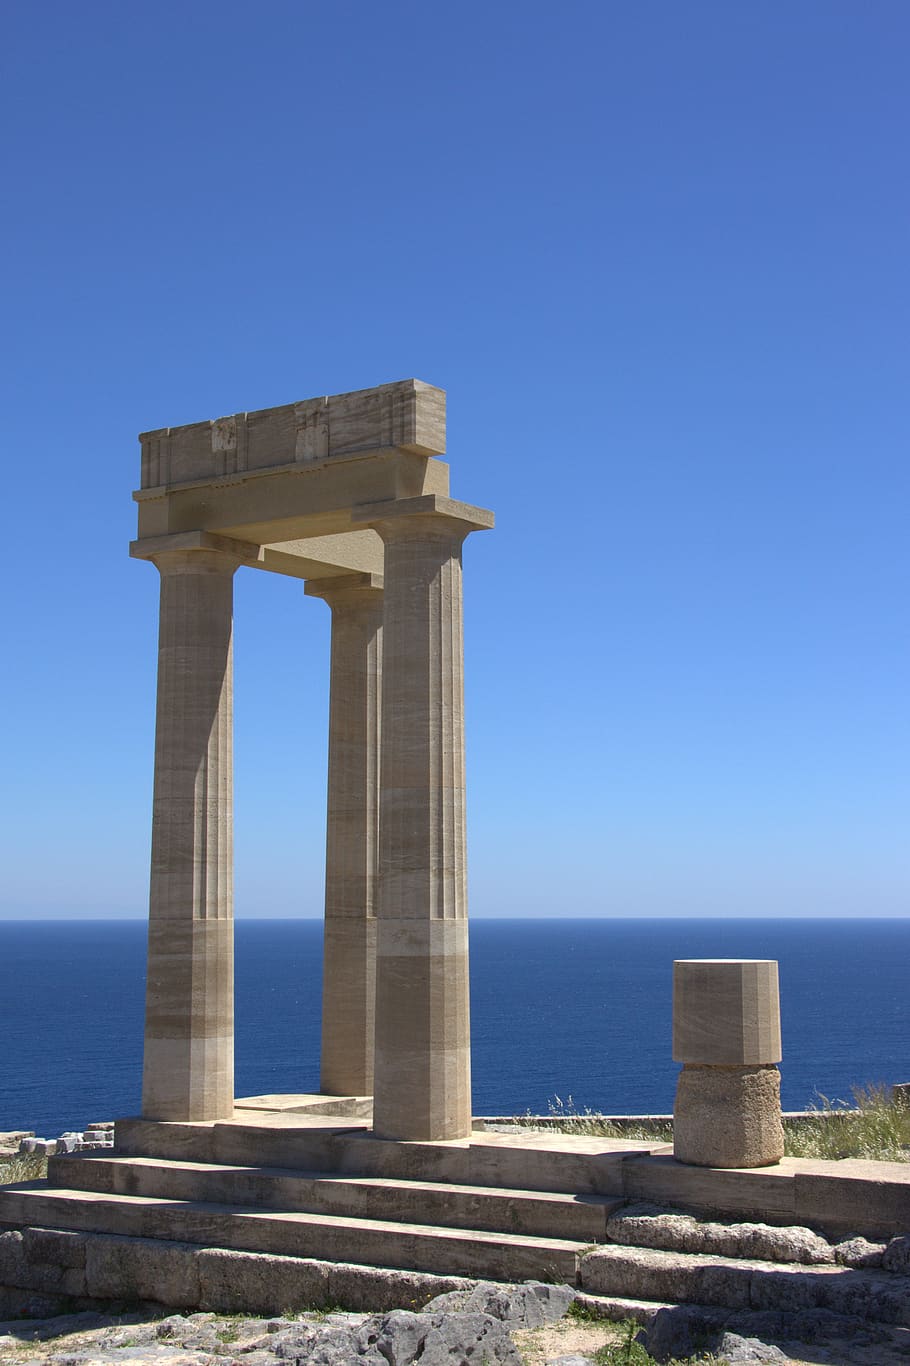 greece, rhodes, lindos, acropolis, columnar, stones, sky, blue, places of interest, architecture